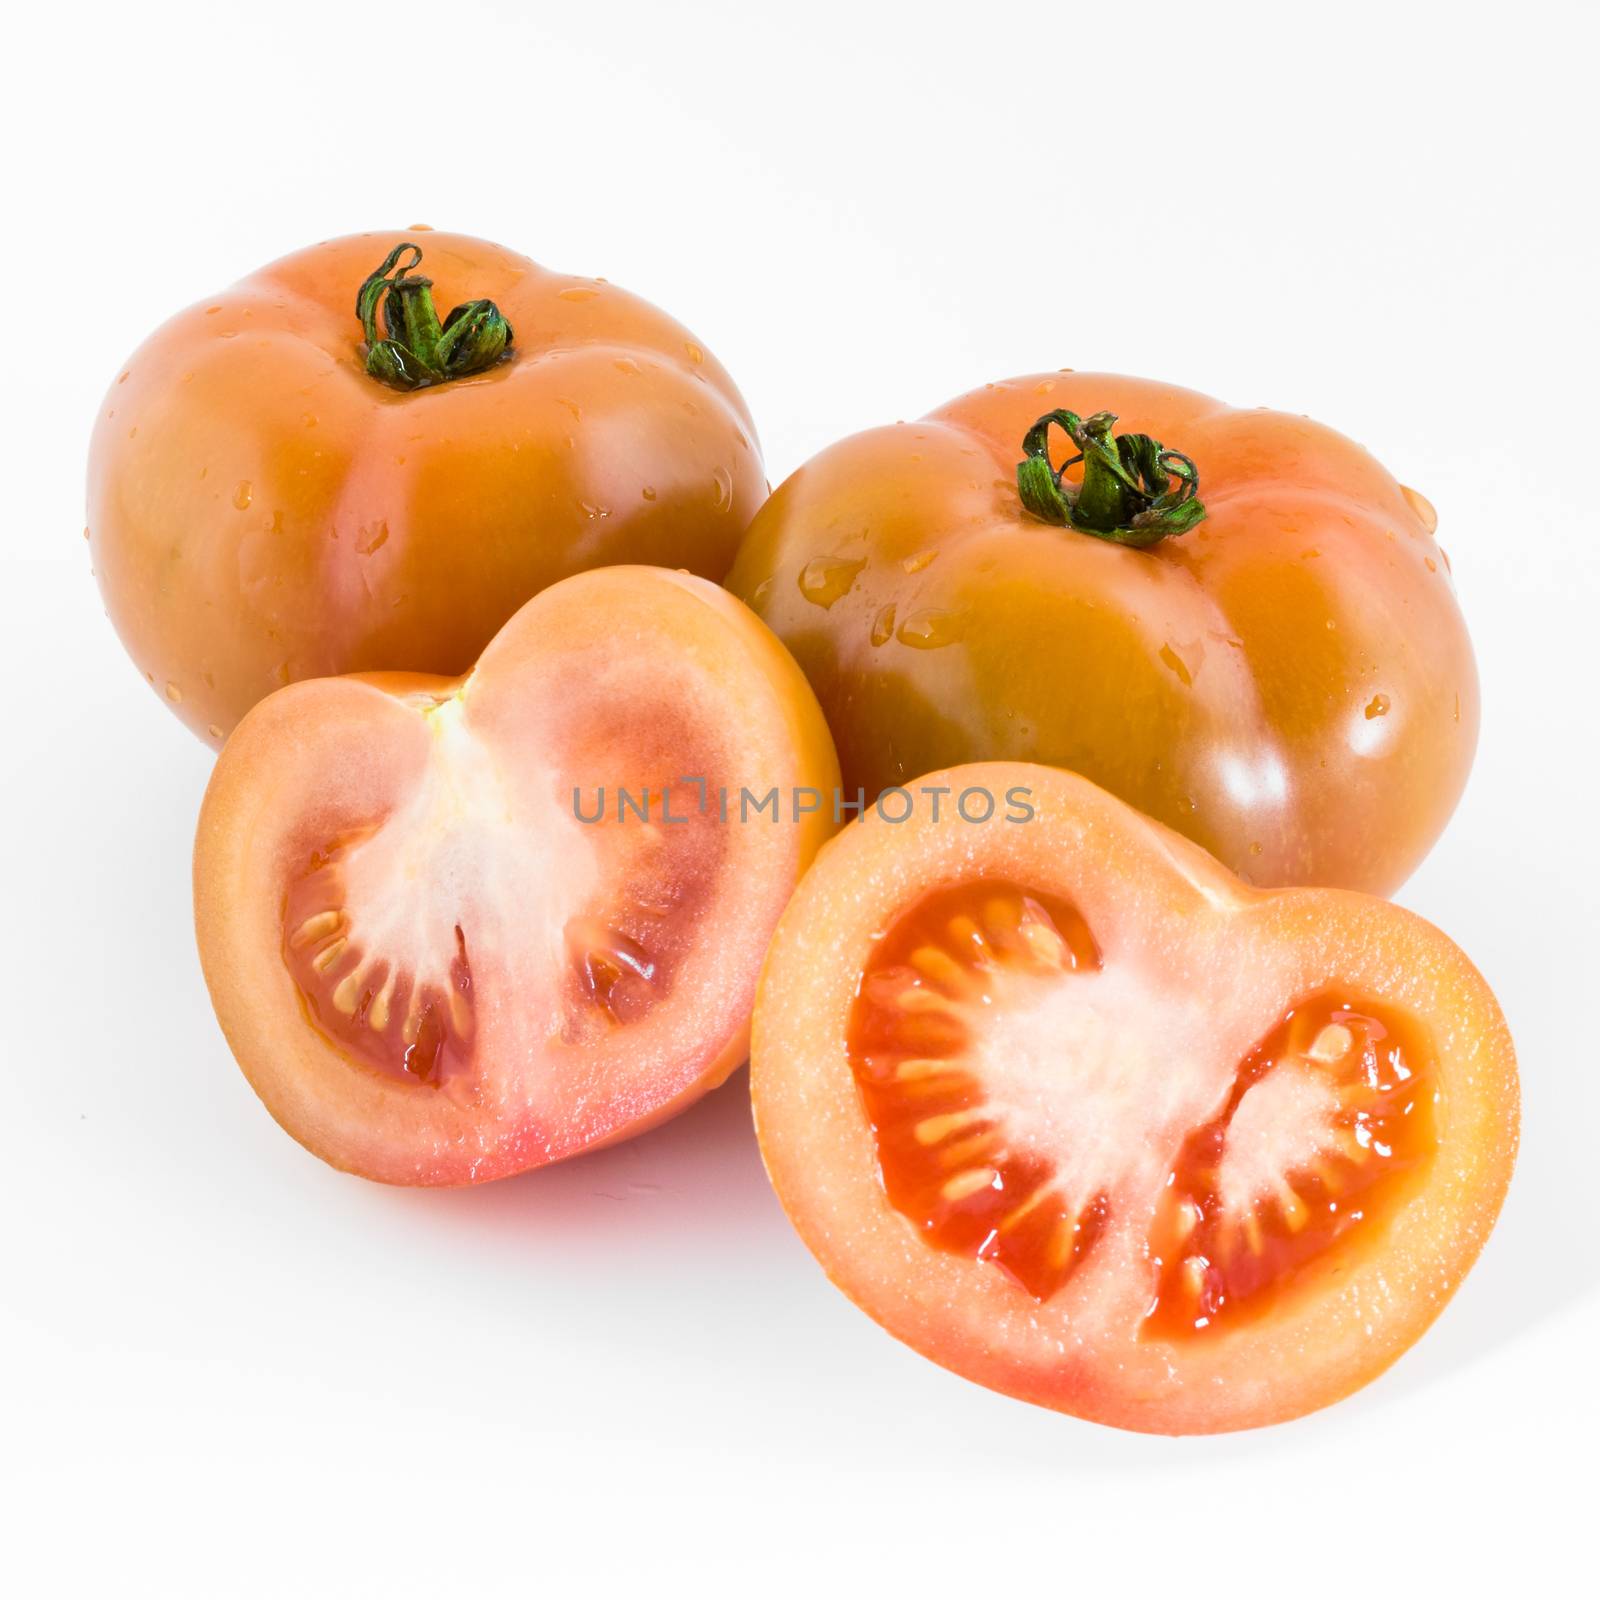 Big tomatoes by germanopoli